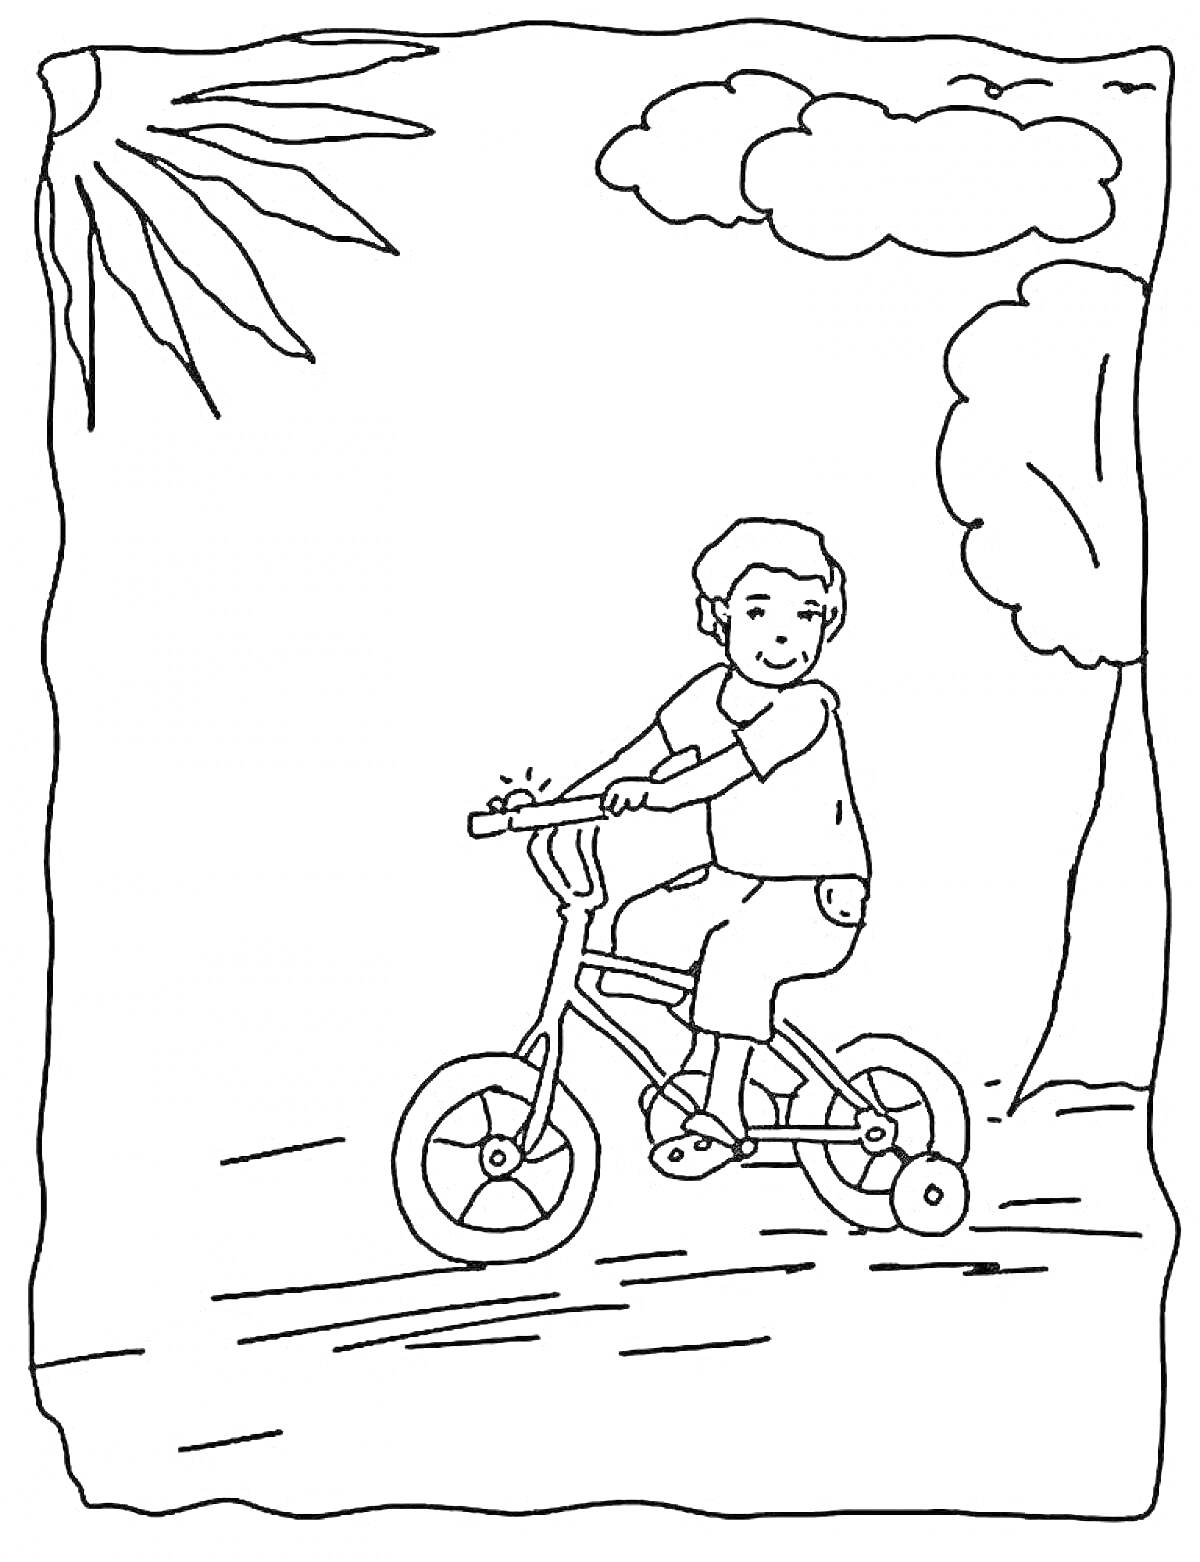 Раскраска Мальчик на велосипеде около дерева под солнцем и облаками